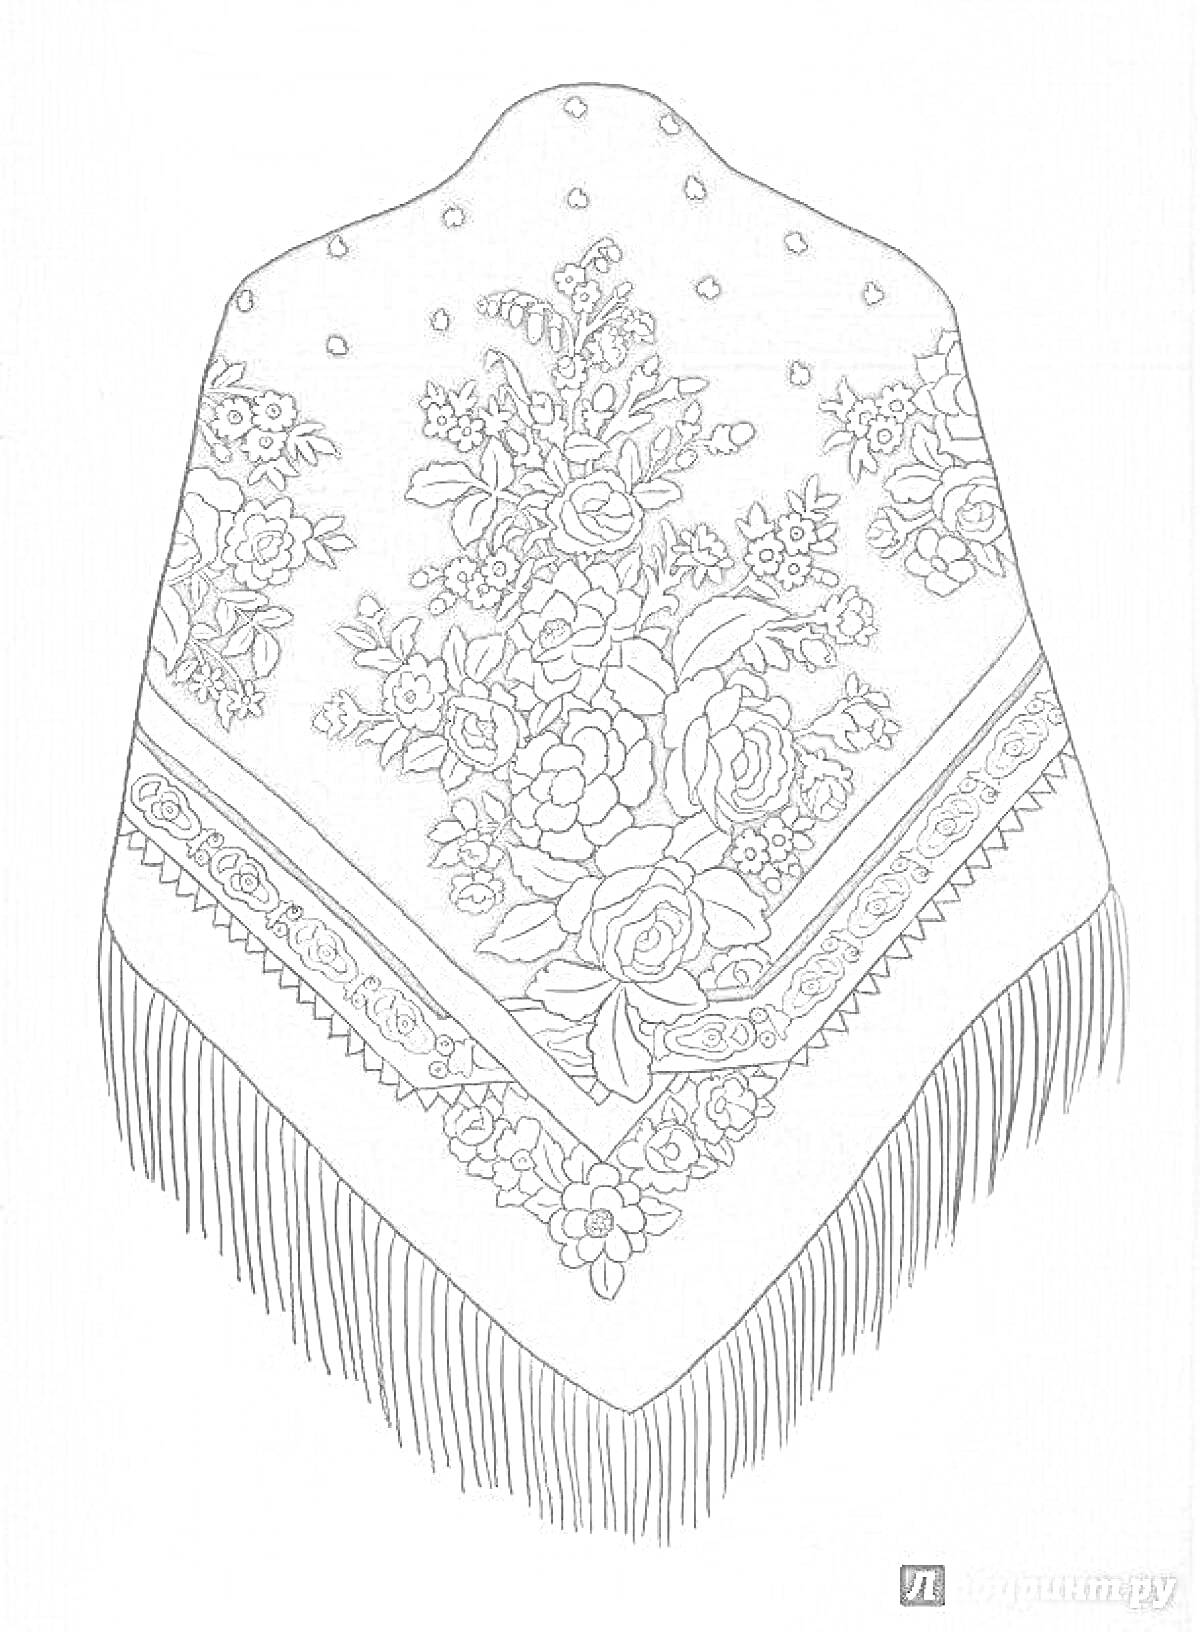 Раскраска Павлопосадский платок с цветочным узором и бахромой. На платке изображены красочные цветочные композиции и узоры на темном фоне, украшенные бахромой по краю.